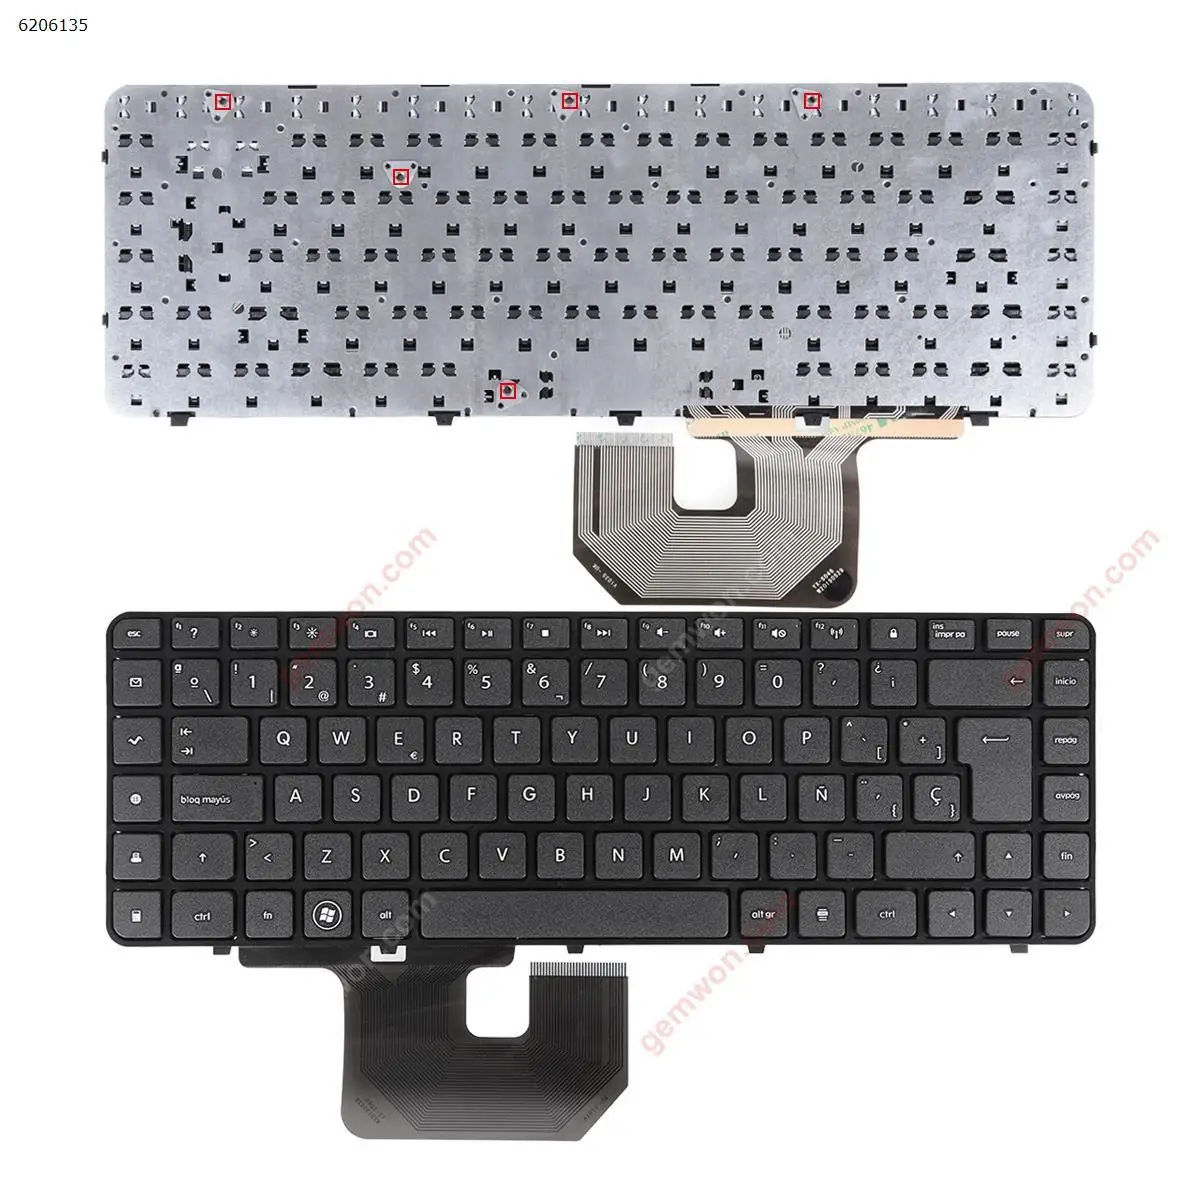 

SP Laptop Keyboard for HP dv6-3156ef dv6-3156sf dv6-3160 dv6-3154sf dv6-3156ef dv6-3156sf dv6-3160 GLOSSY FRAME BLACK Reprint